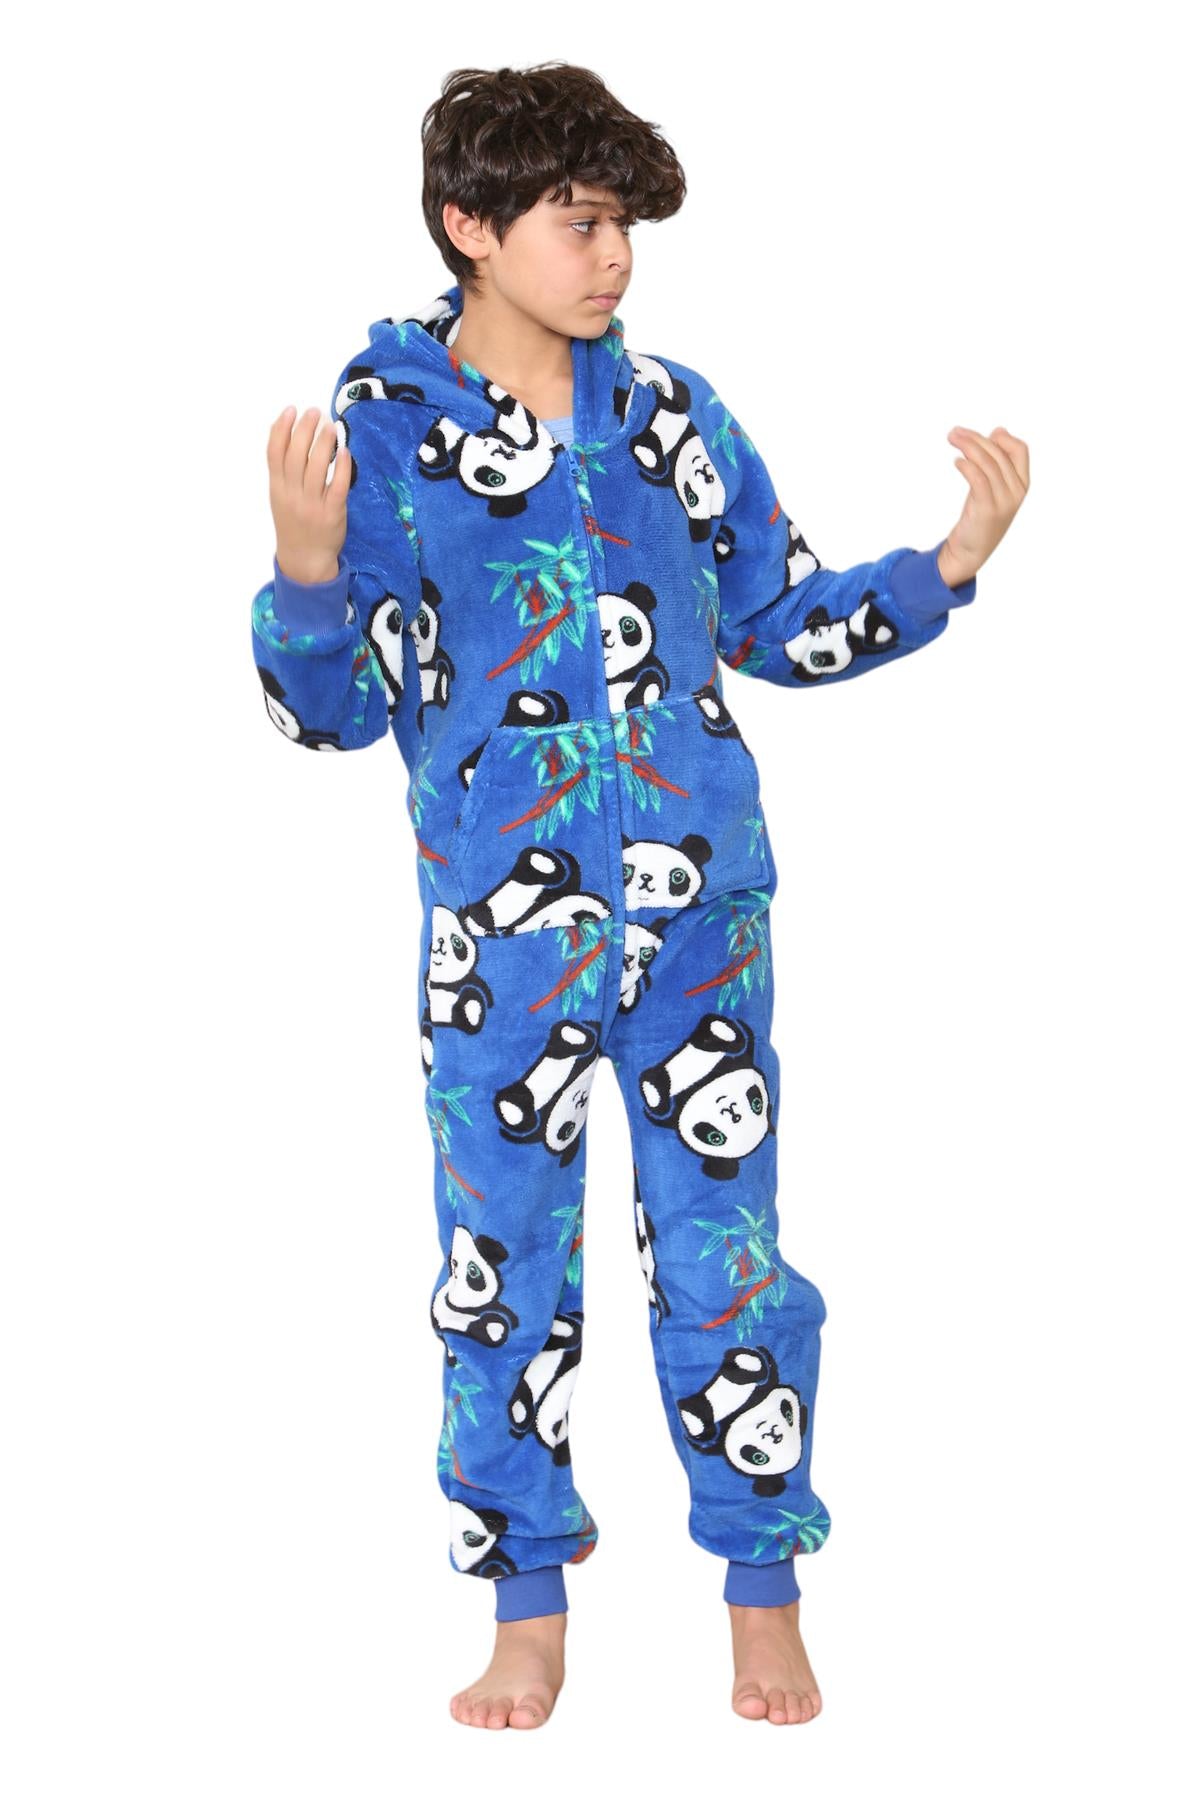 Kids Fleece A2Z Onesie One Piece Pyjamas Panda Print Sleepsuit For Boys Girls